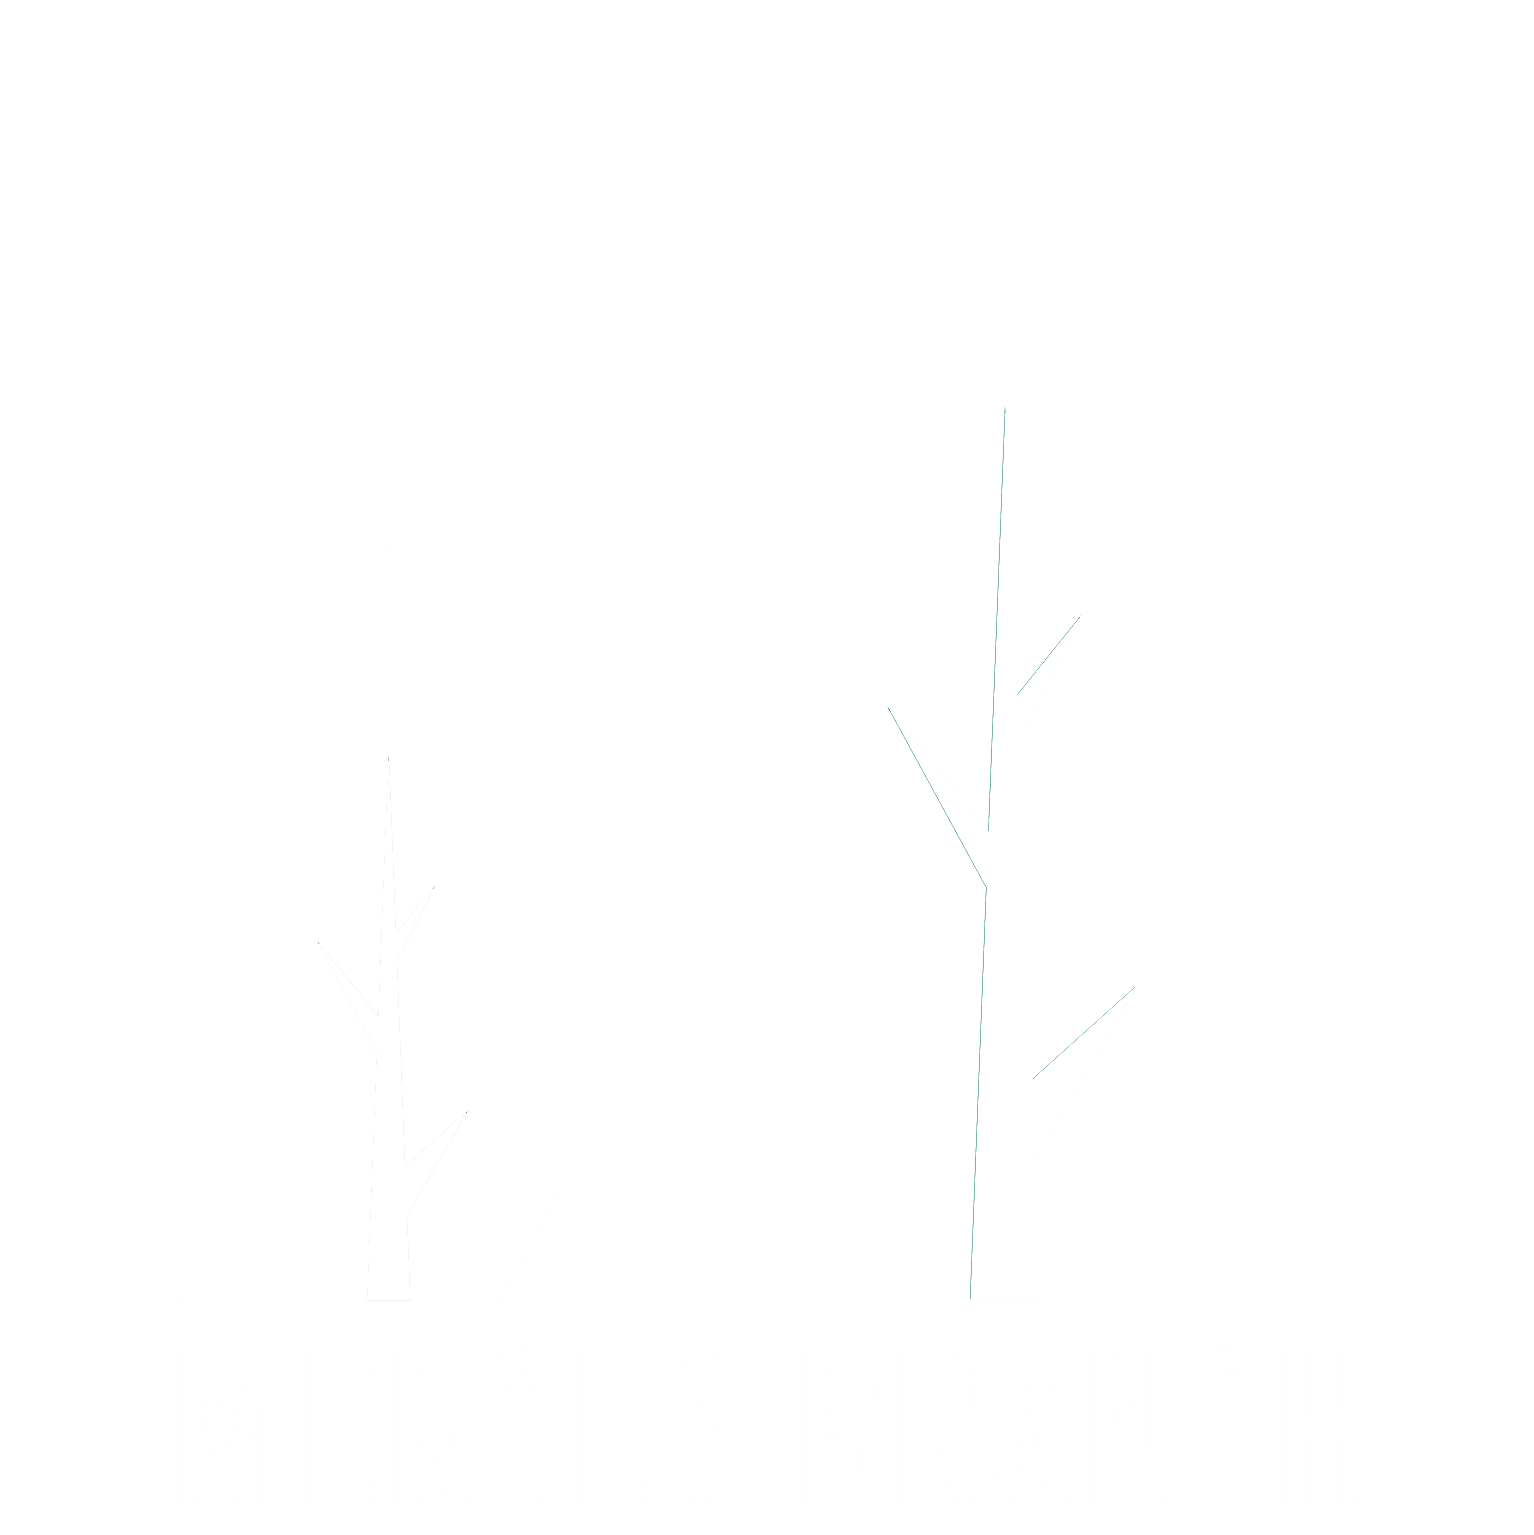 Mersey Branch